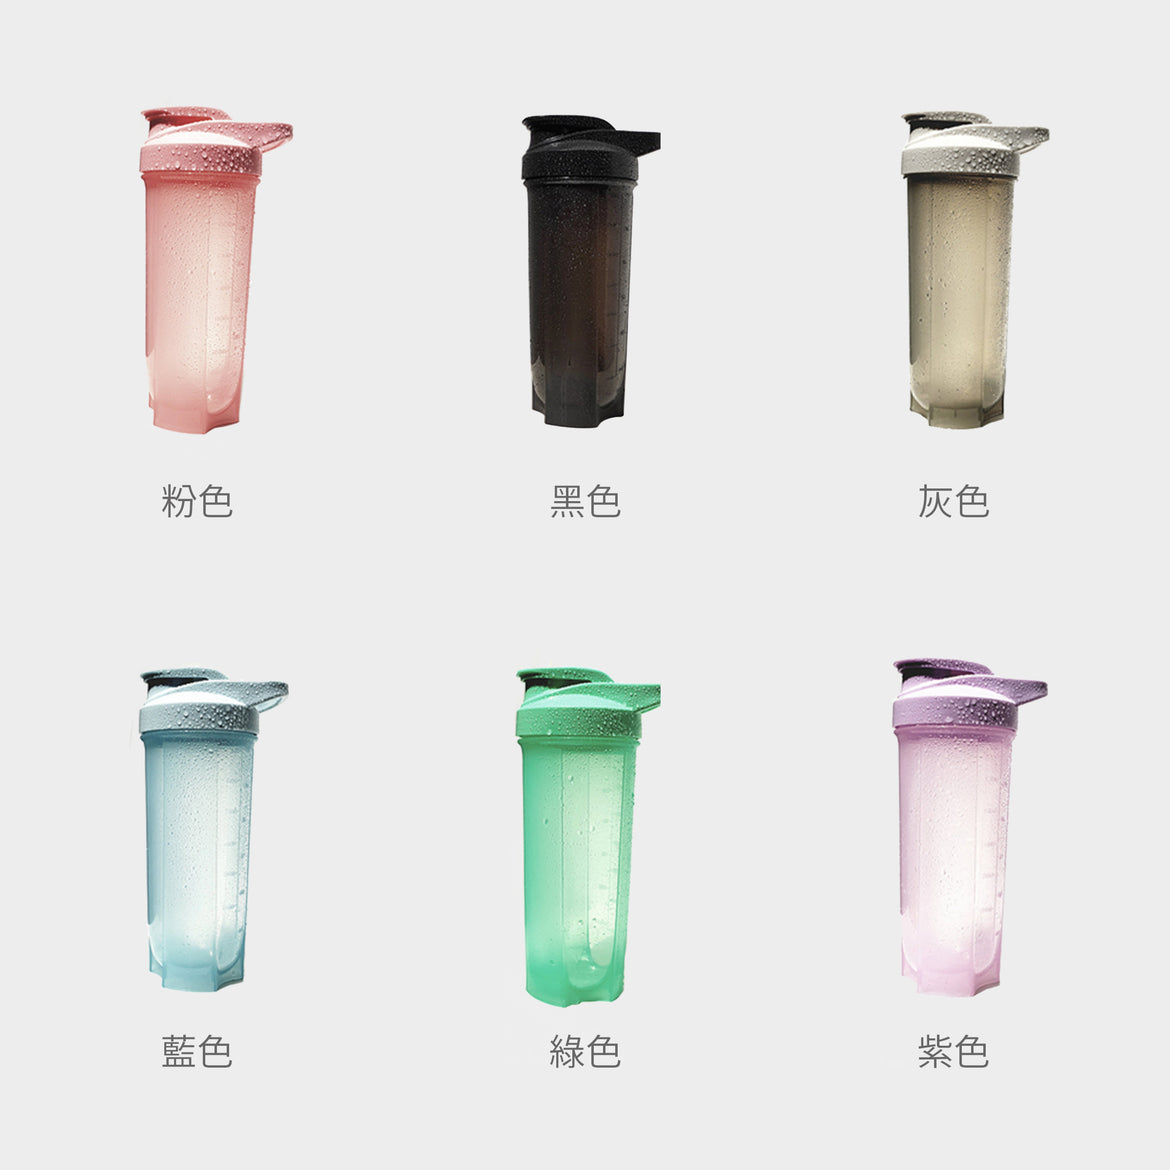 【健身系列】訂制健身運動水瓶 水樽 食品級PP塑料水樽